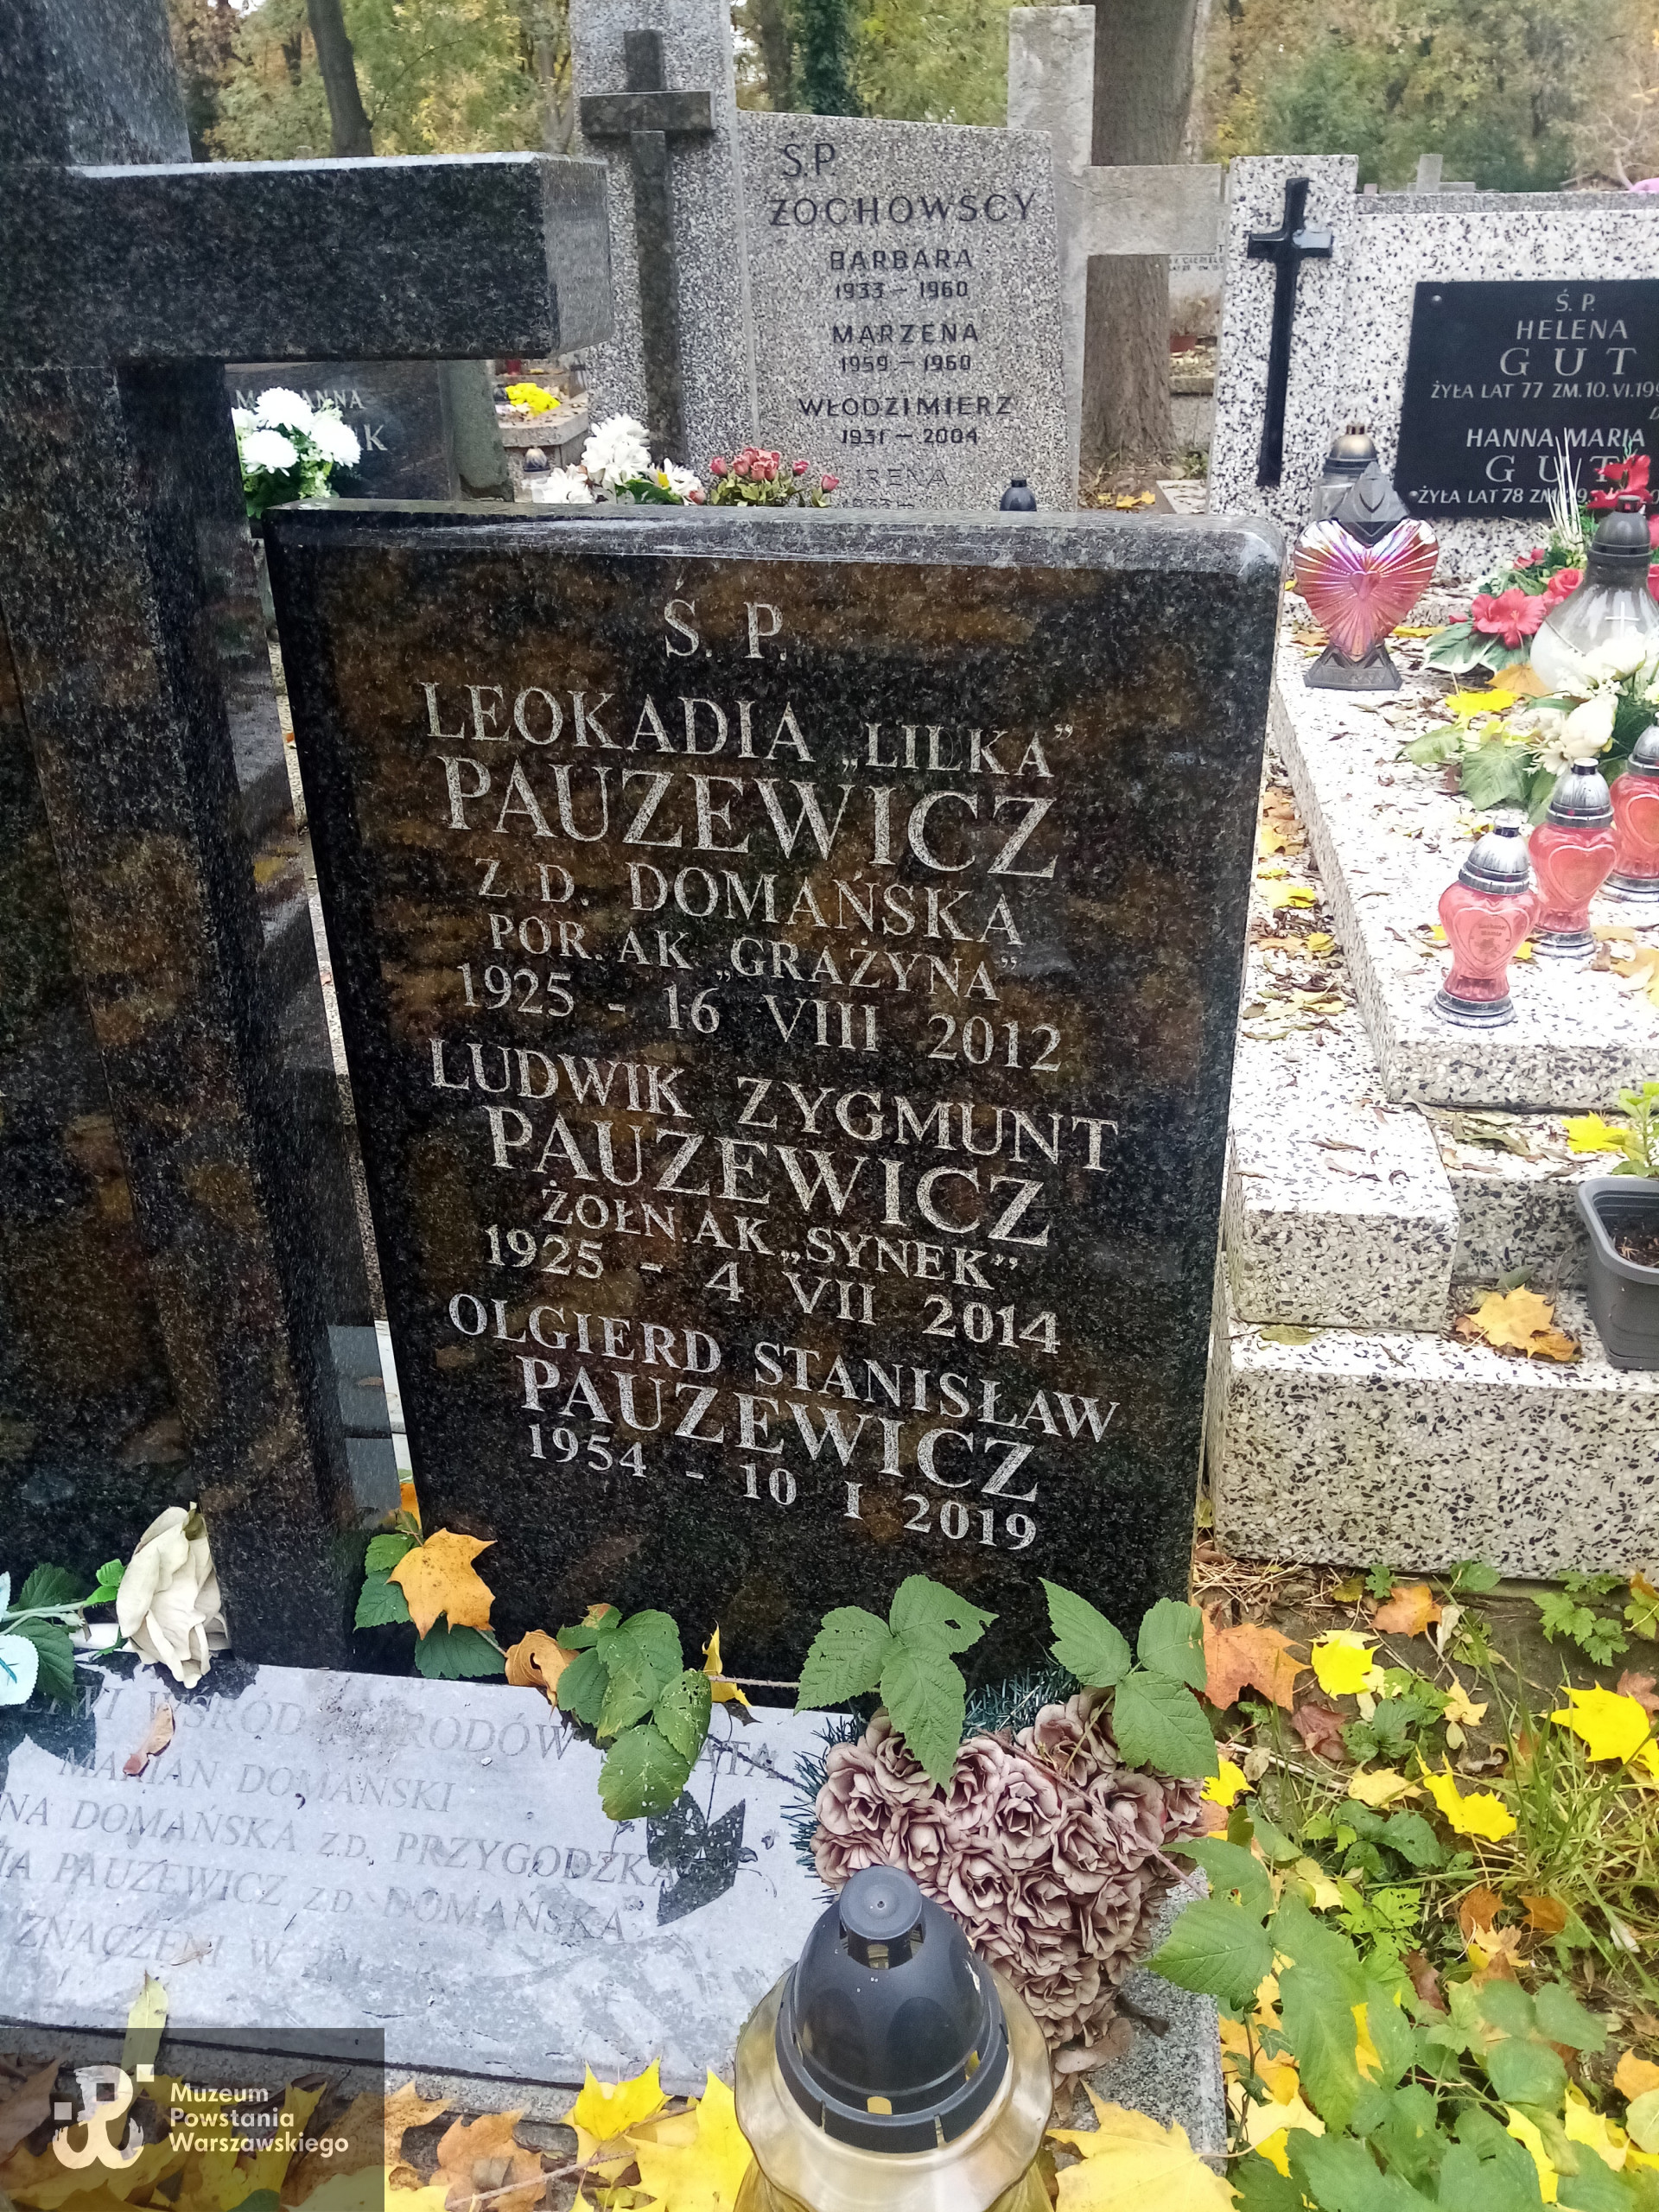 Cmentarz Bródnowski w Warszawie,  sektor 12M, rząd 5, grób 14. Fot. Muzeum Powstania Warszawskiego/Baza grobów